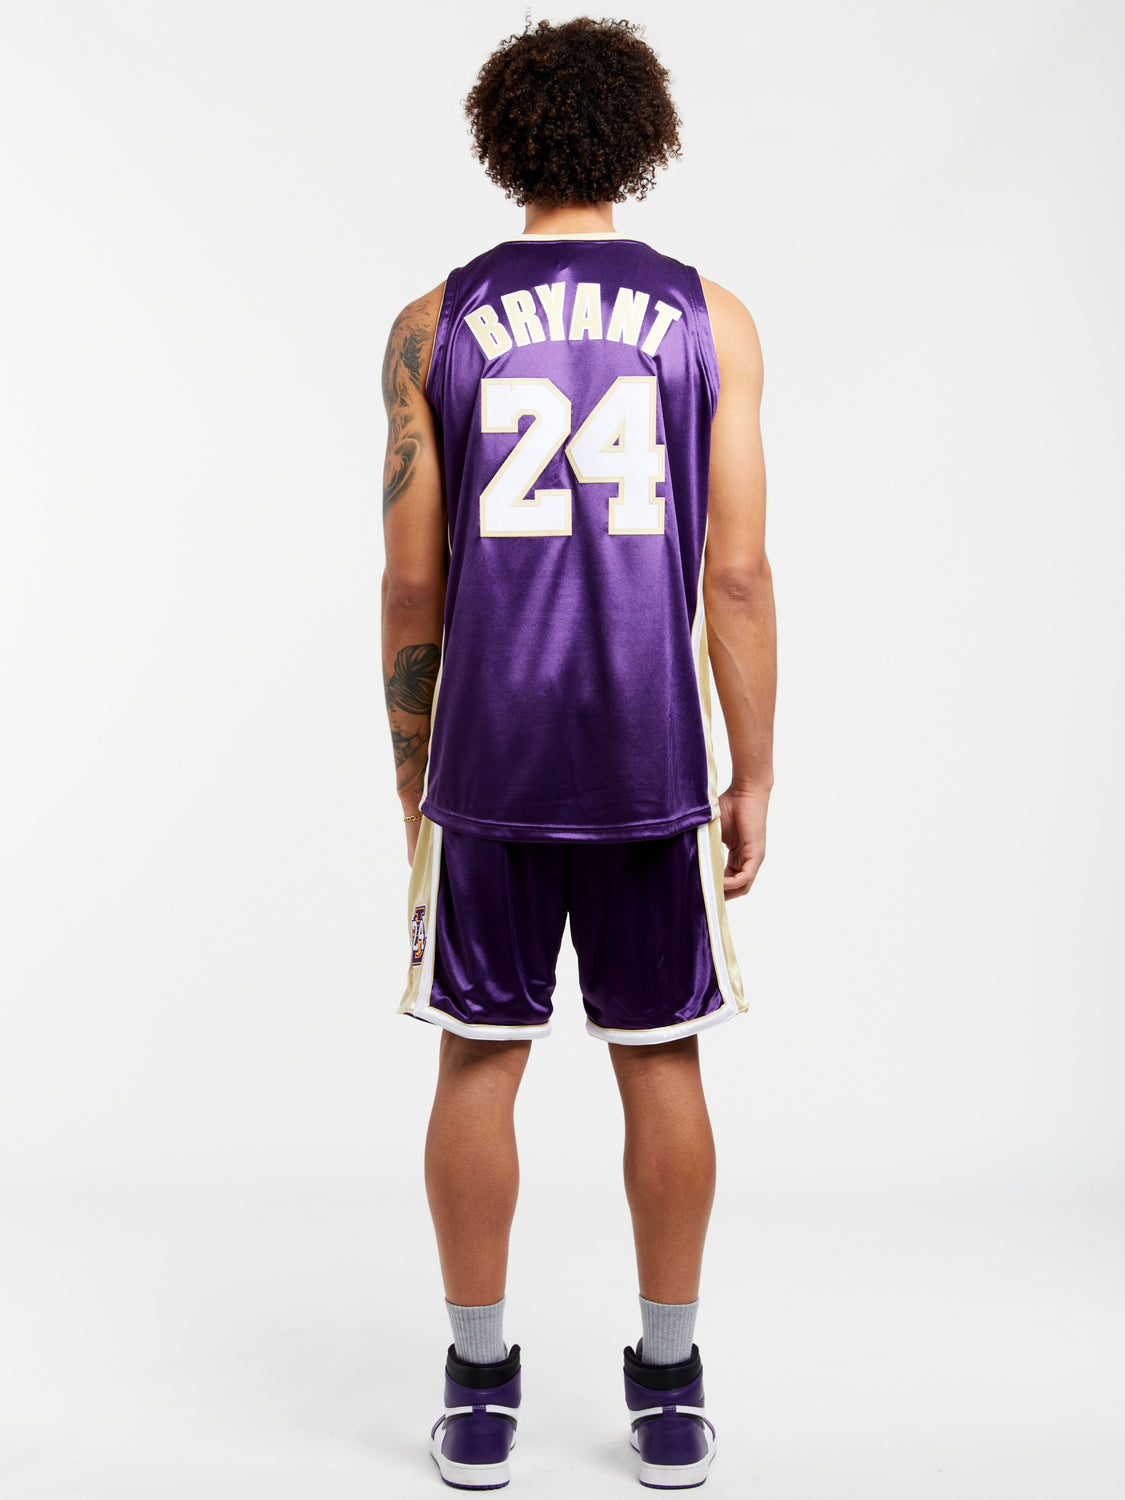 8 – 24 -2 T Shirt Los Angeles Lakers – Kobe Bryant front, hoodie